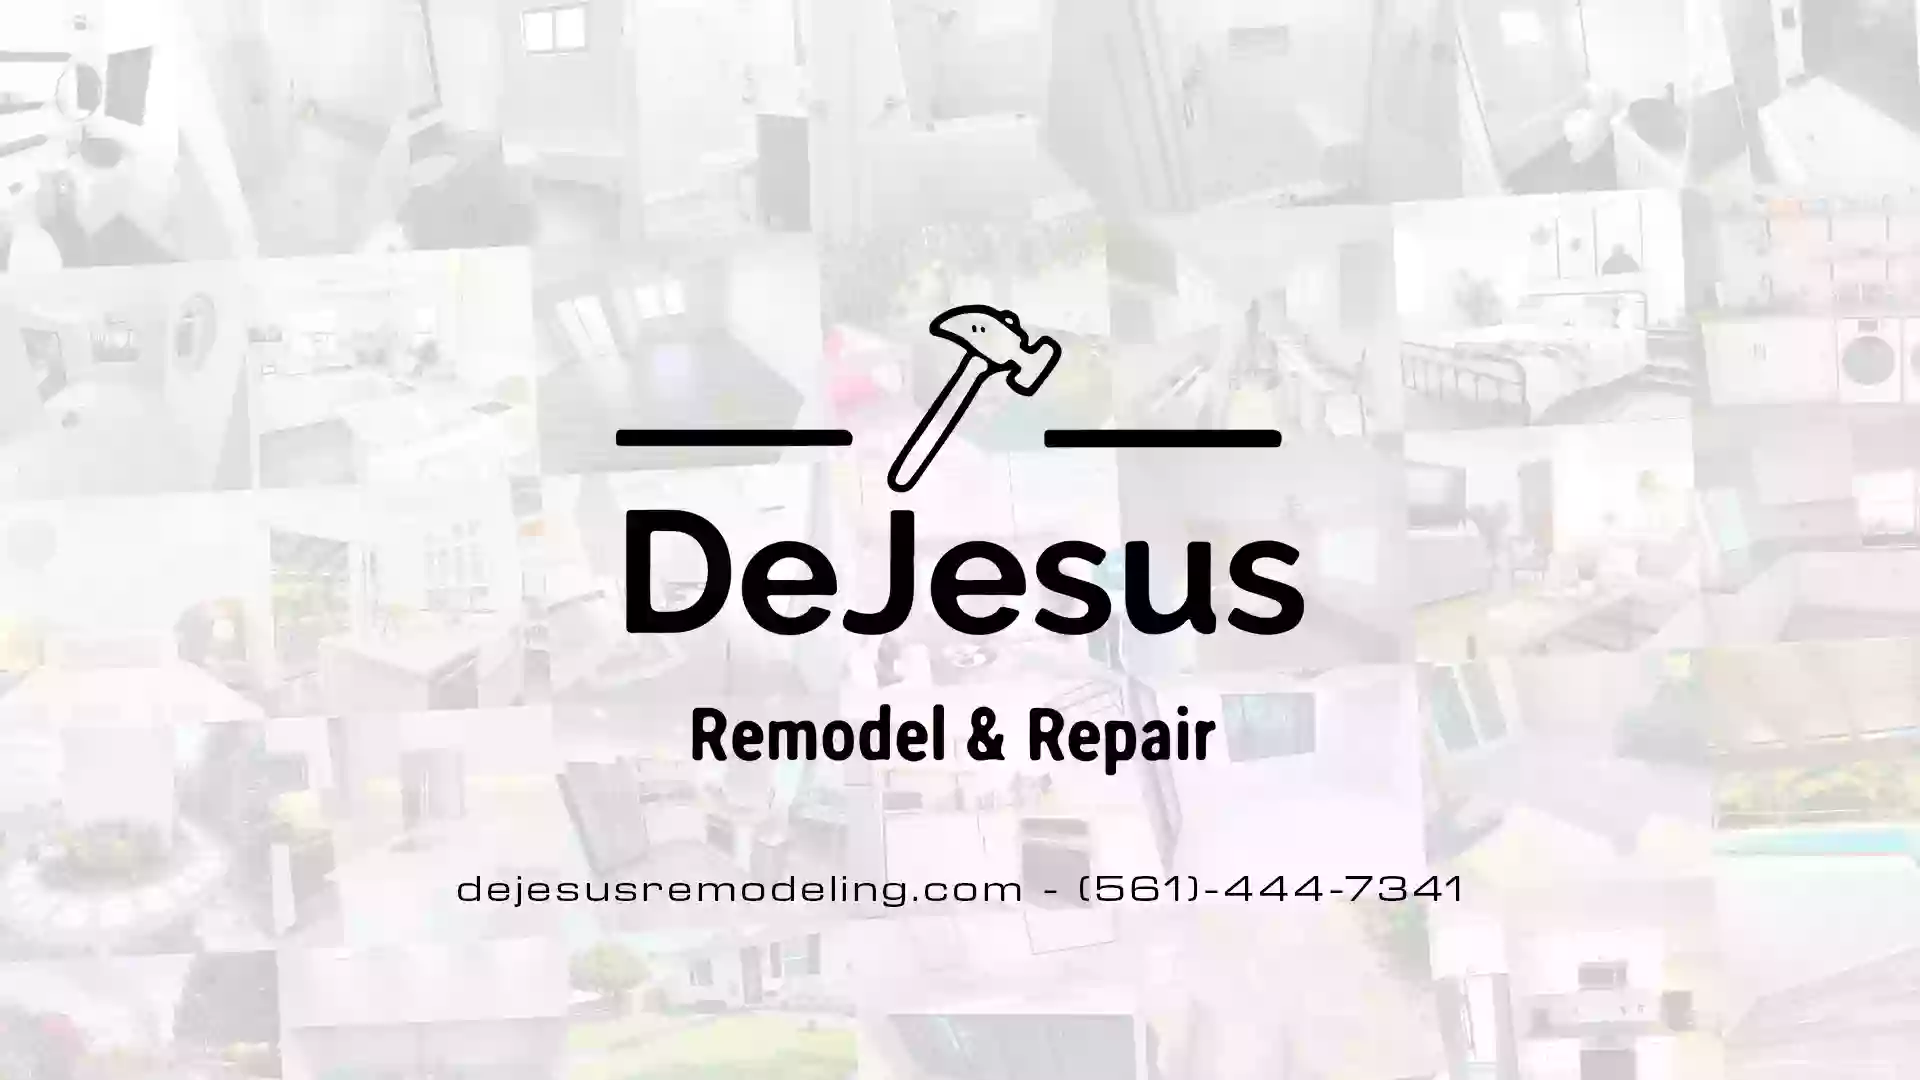 Dejesus Remodeling and Repairs, LLC